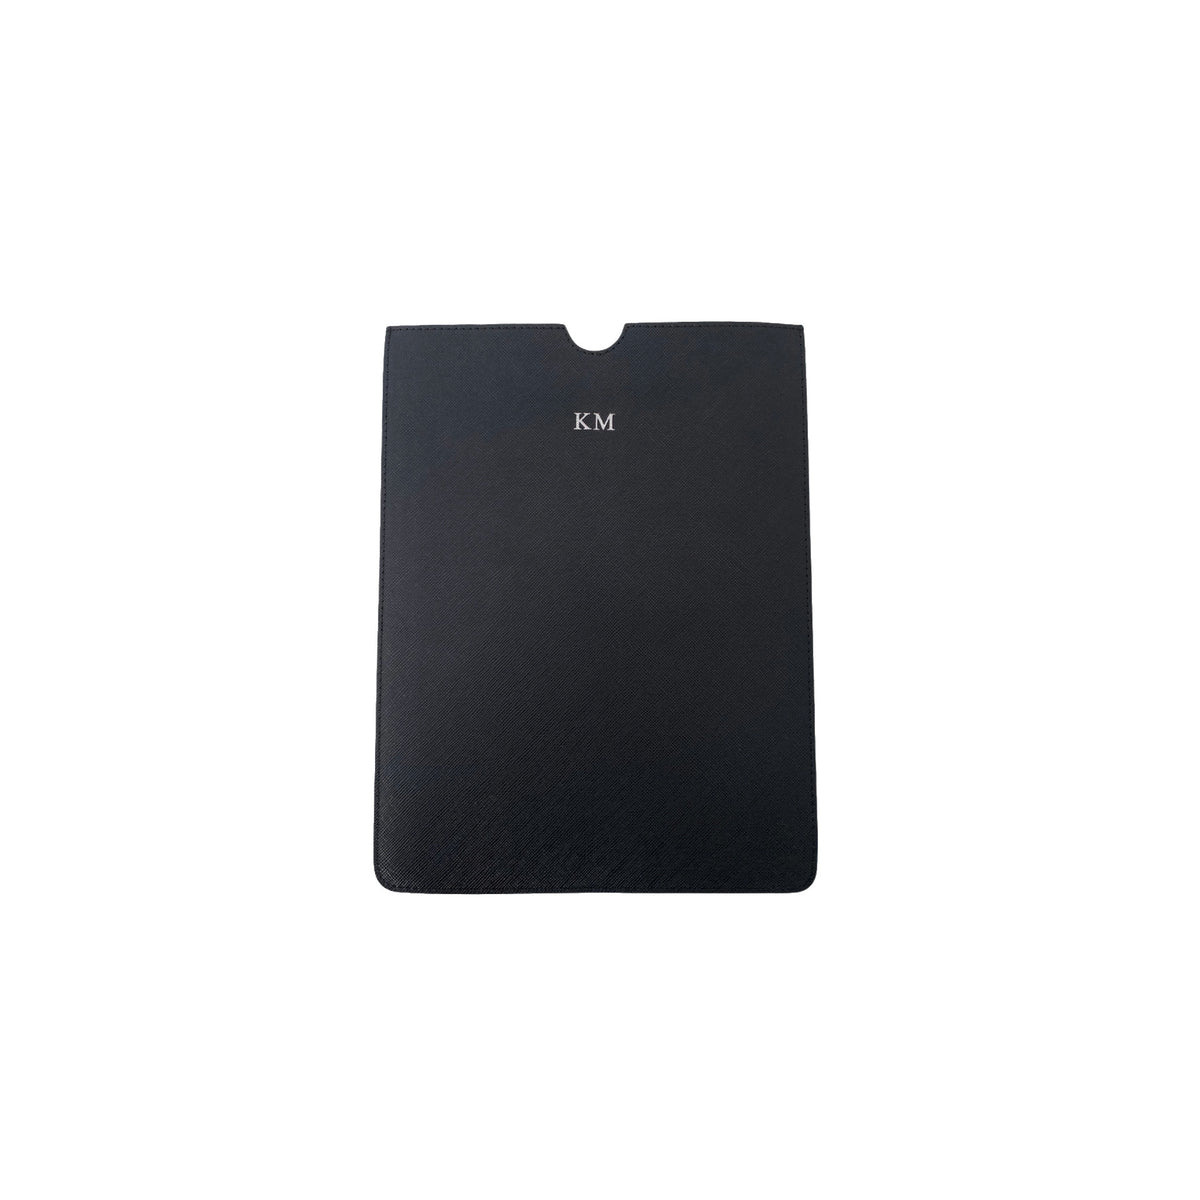 Personalised Black Monogrammed Saffiano Leather iPad Sleeve